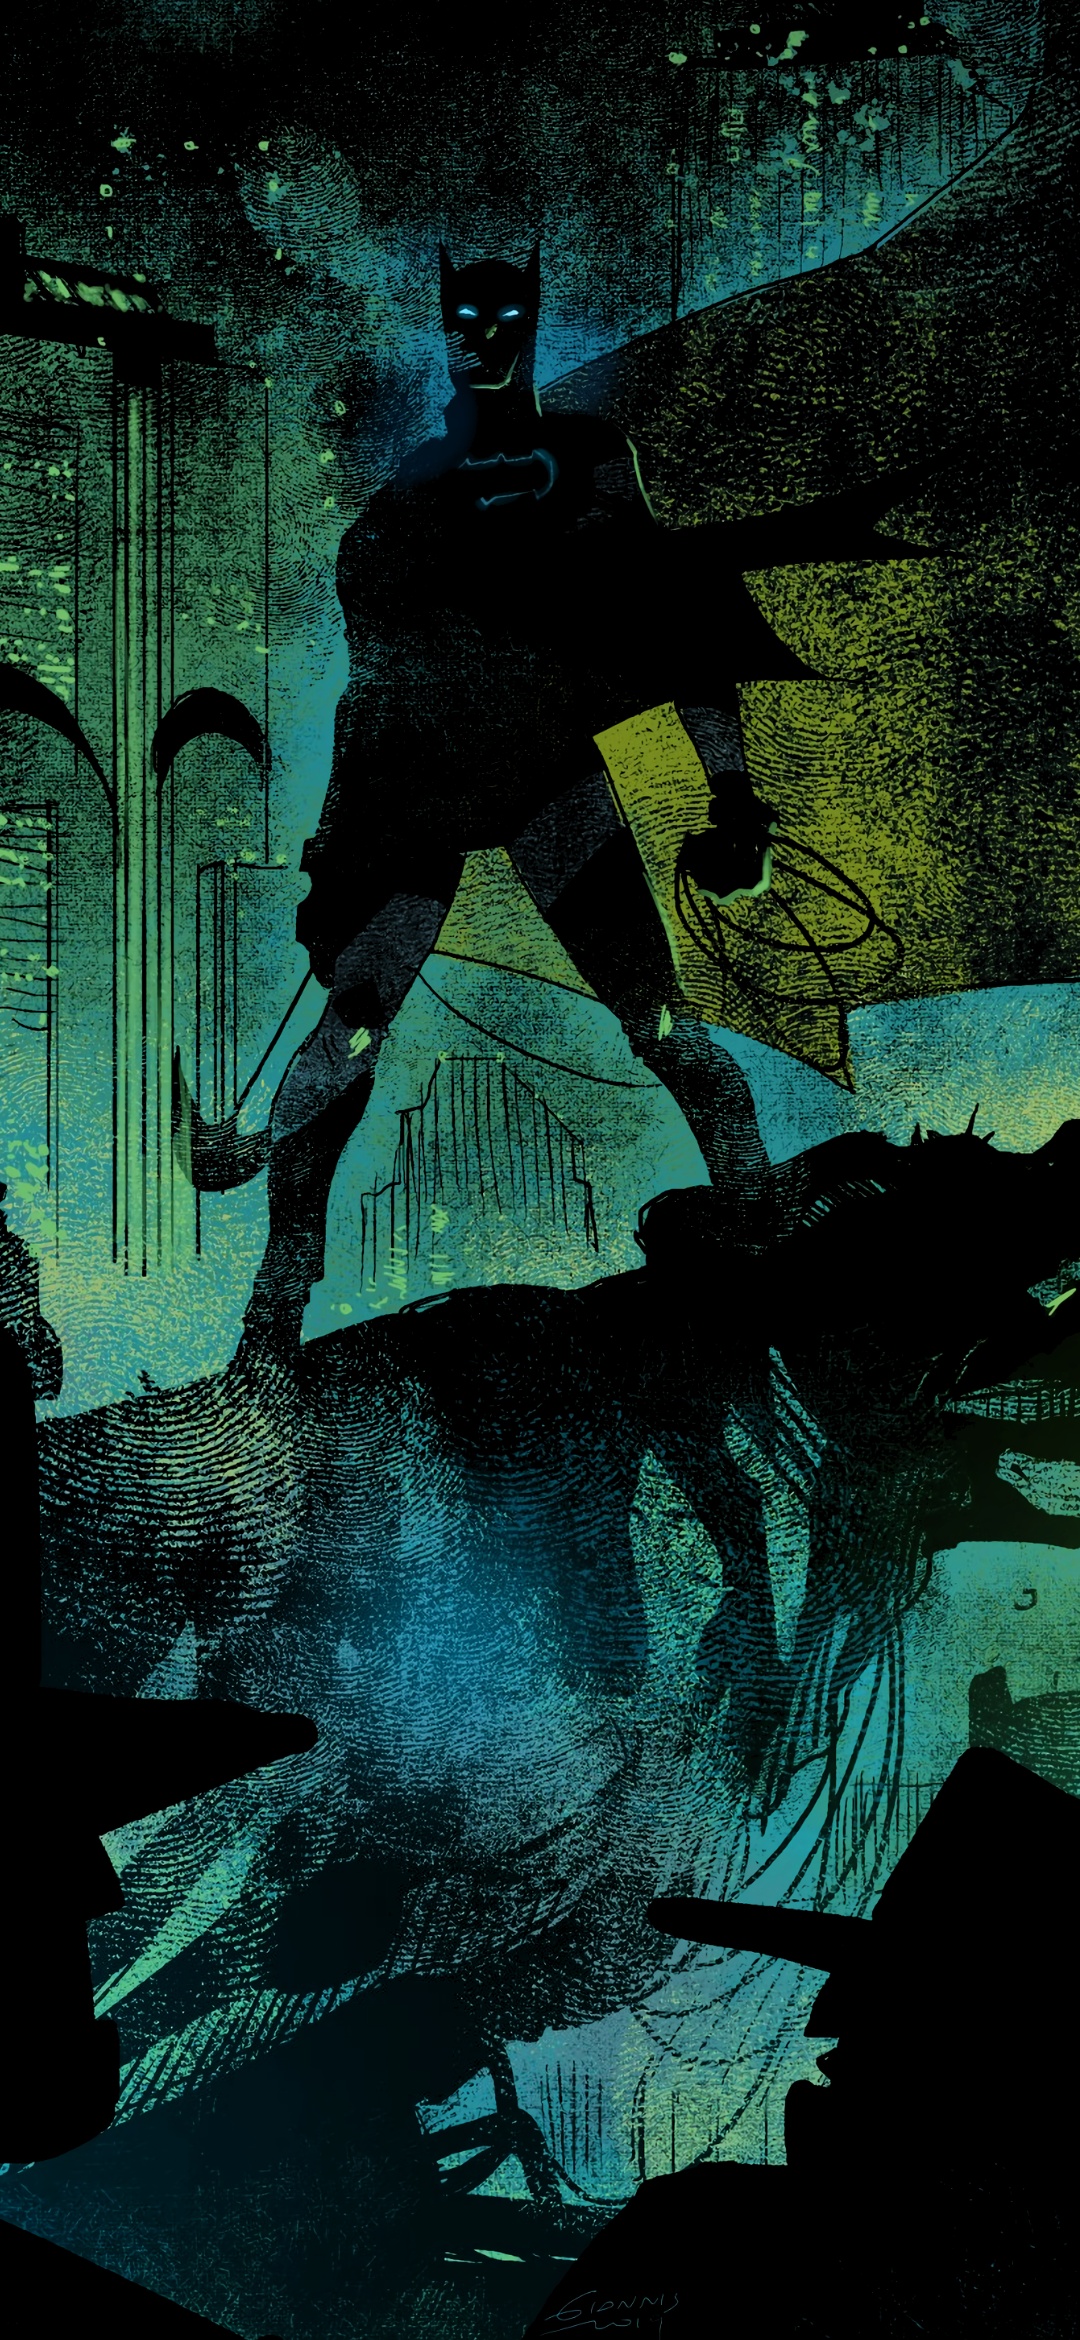 The Batman wallpaper (by Dan Mora) [2012x4360] : r/ComicWalls